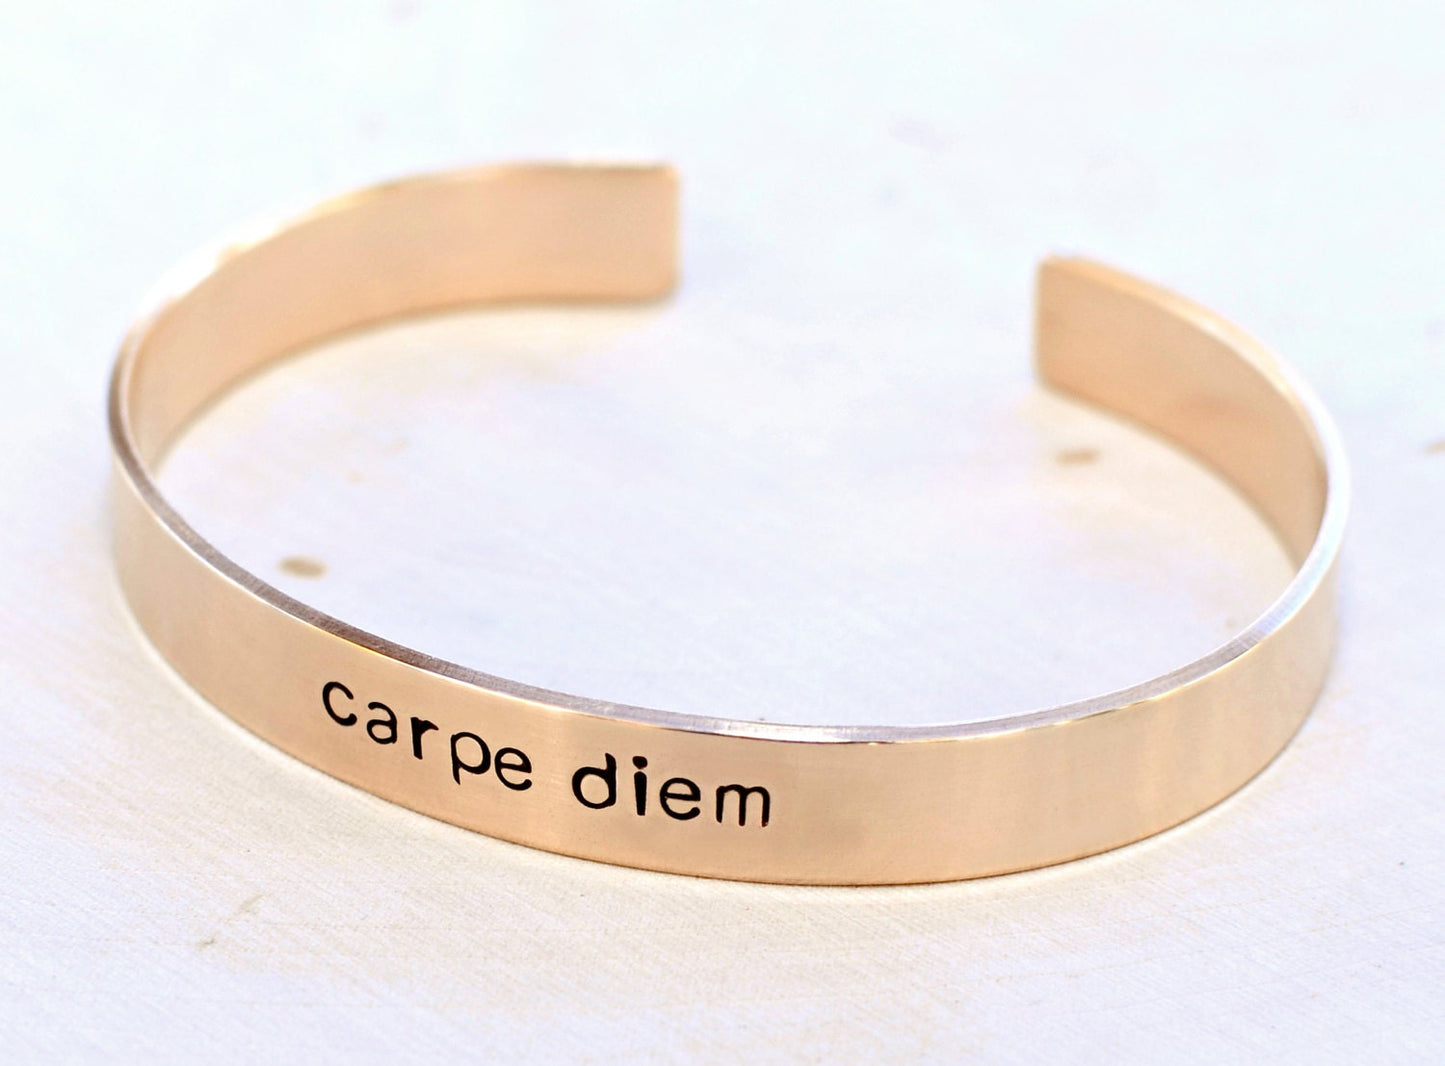 Bronze Carpe Diem Cuff Bracelet